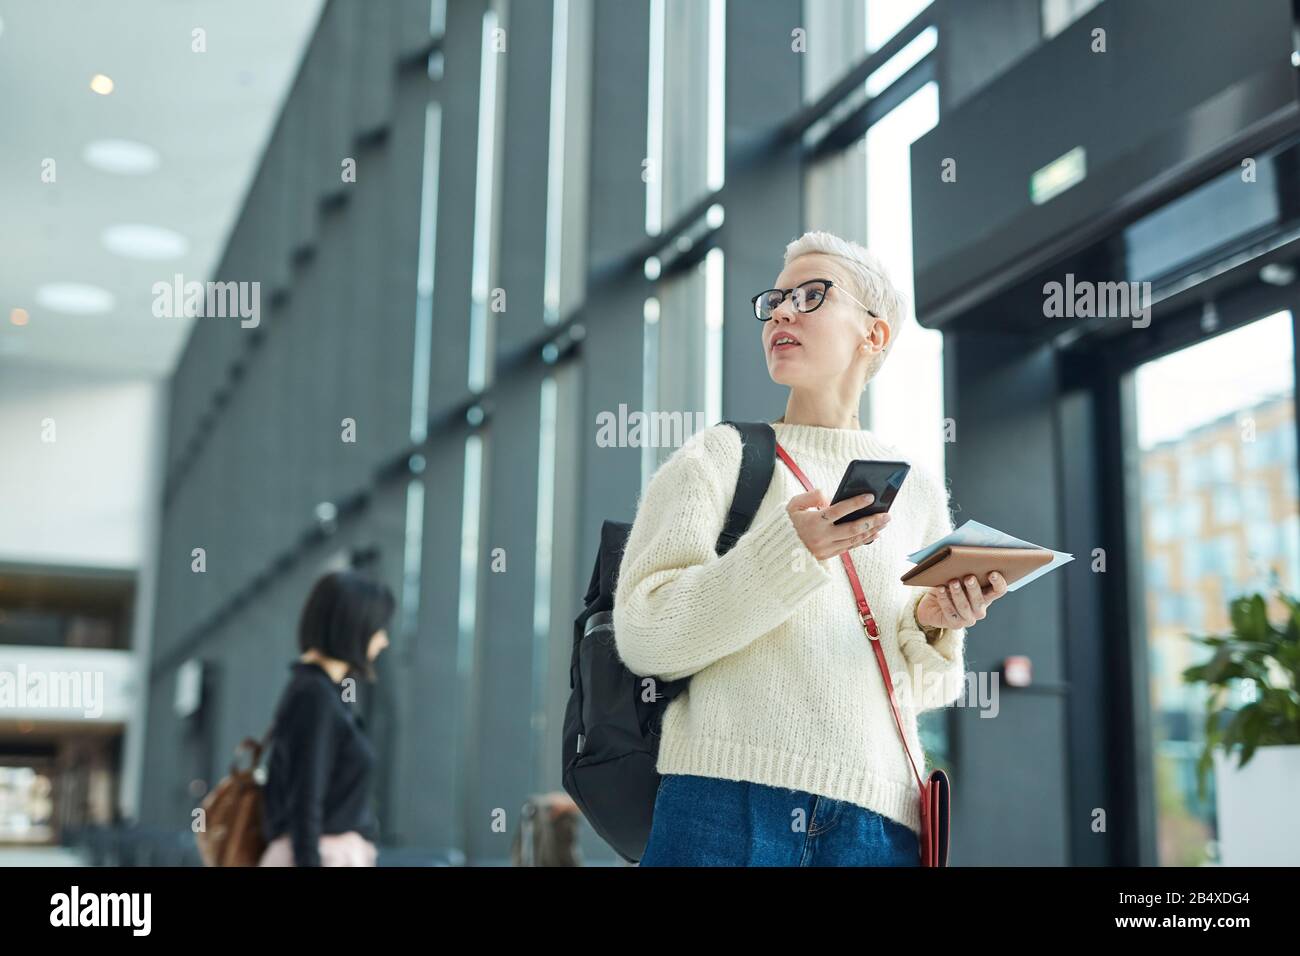 Portrait horizontal à faible angle d'une femme caucasienne élégante avec des cheveux blonds courts debout à l'aéroport, tenant le smartphone et la carte d'embarquement à la recherche, Banque D'Images